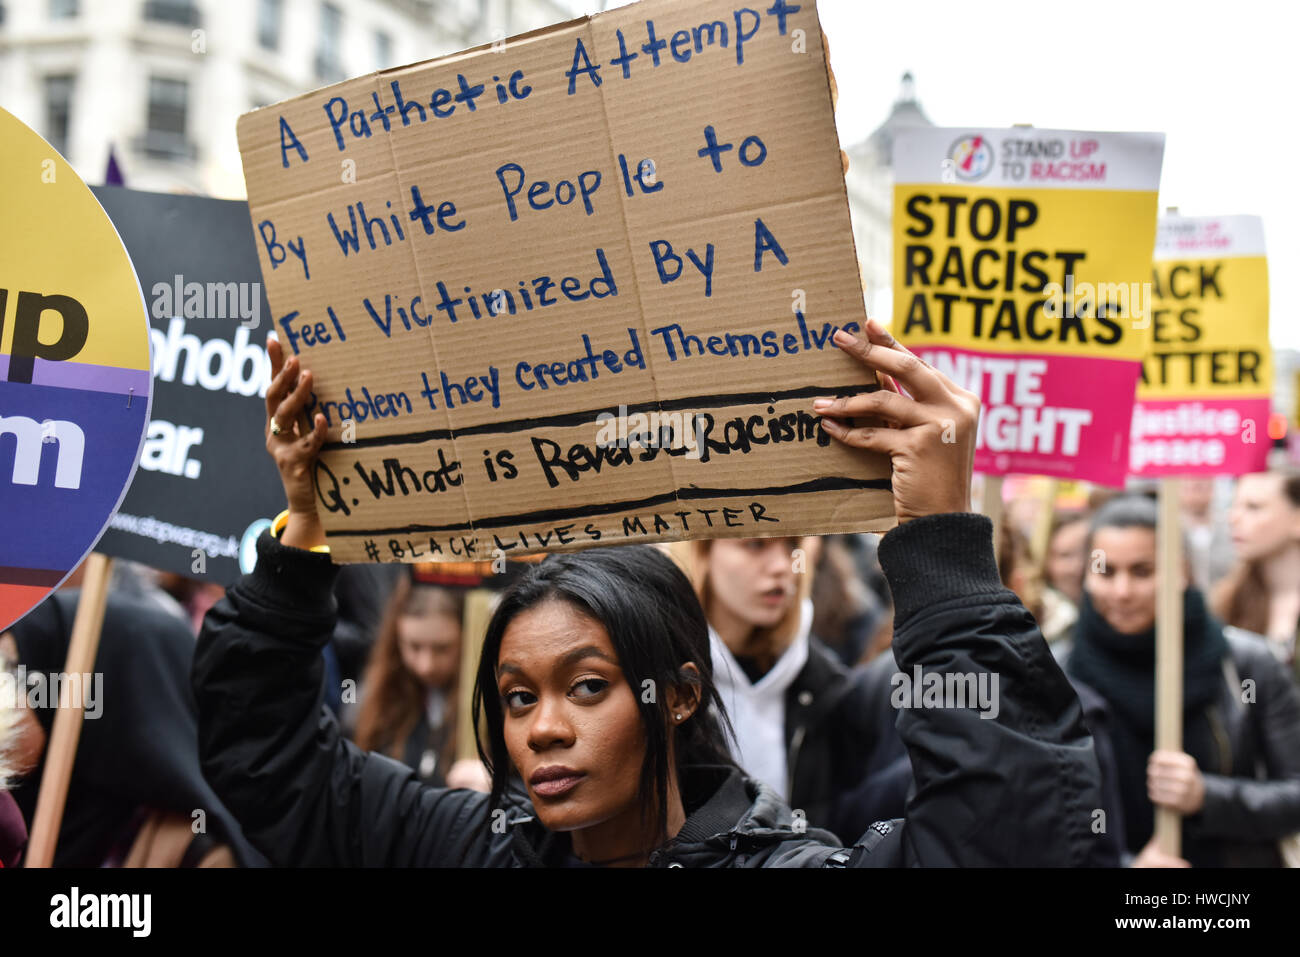 London, UK. 18. März 2017. Ein Demonstrant an einem Anti-Rassismus-Marsch durch die Londoner auf Anti-Rassismus-Tag der Vereinten Nationen, mit einem Schild, das ablehnt, "reverse Rassismus" als "erbärmlich". Hunderte von Demonstranten marschierten von Portland Place, Parliament Square gegen Rassismus, Islamophobie und Antisemitismus. Bildnachweis: Jacob Sacks-Jones/Alamy Live-Nachrichten. Stockfoto